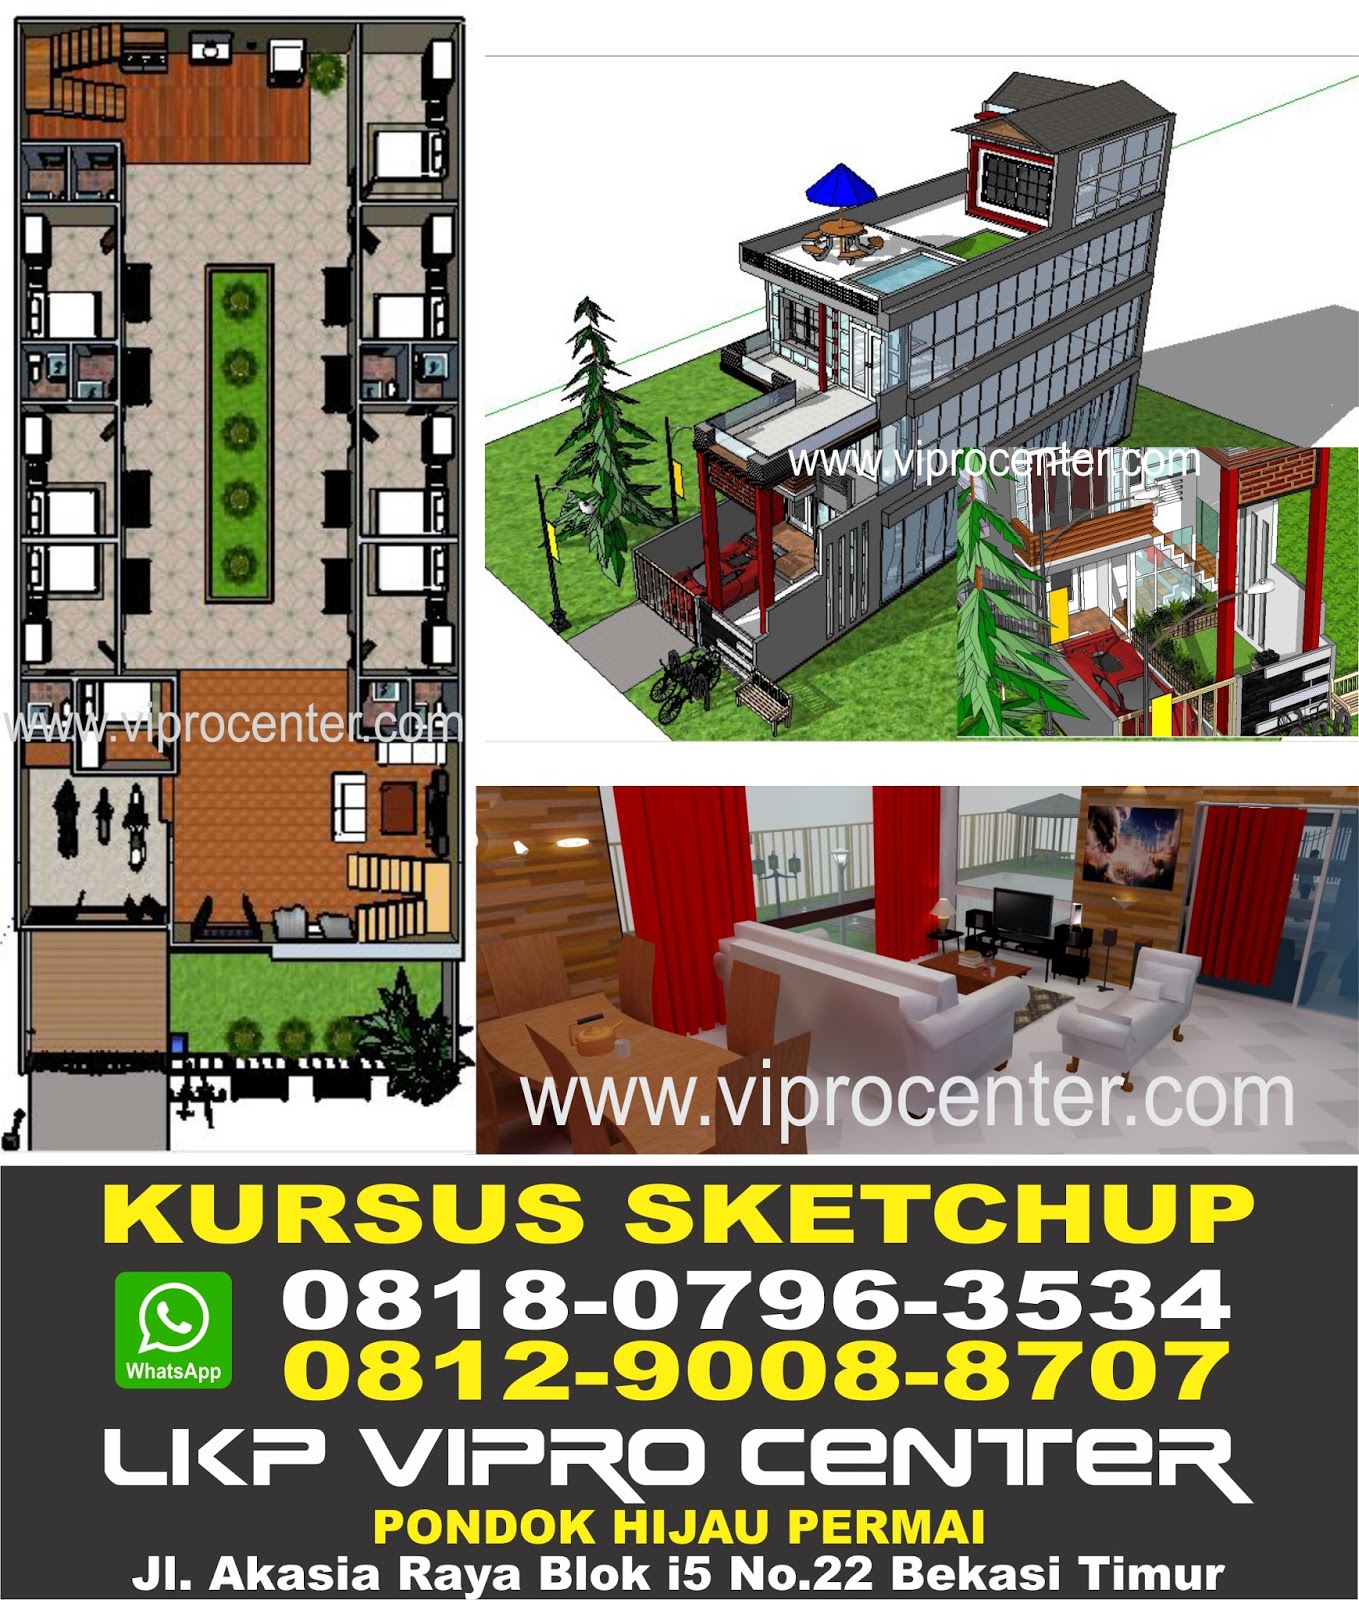 Tempat Kursus SketchUp di Bekasi LKP Vipro Center